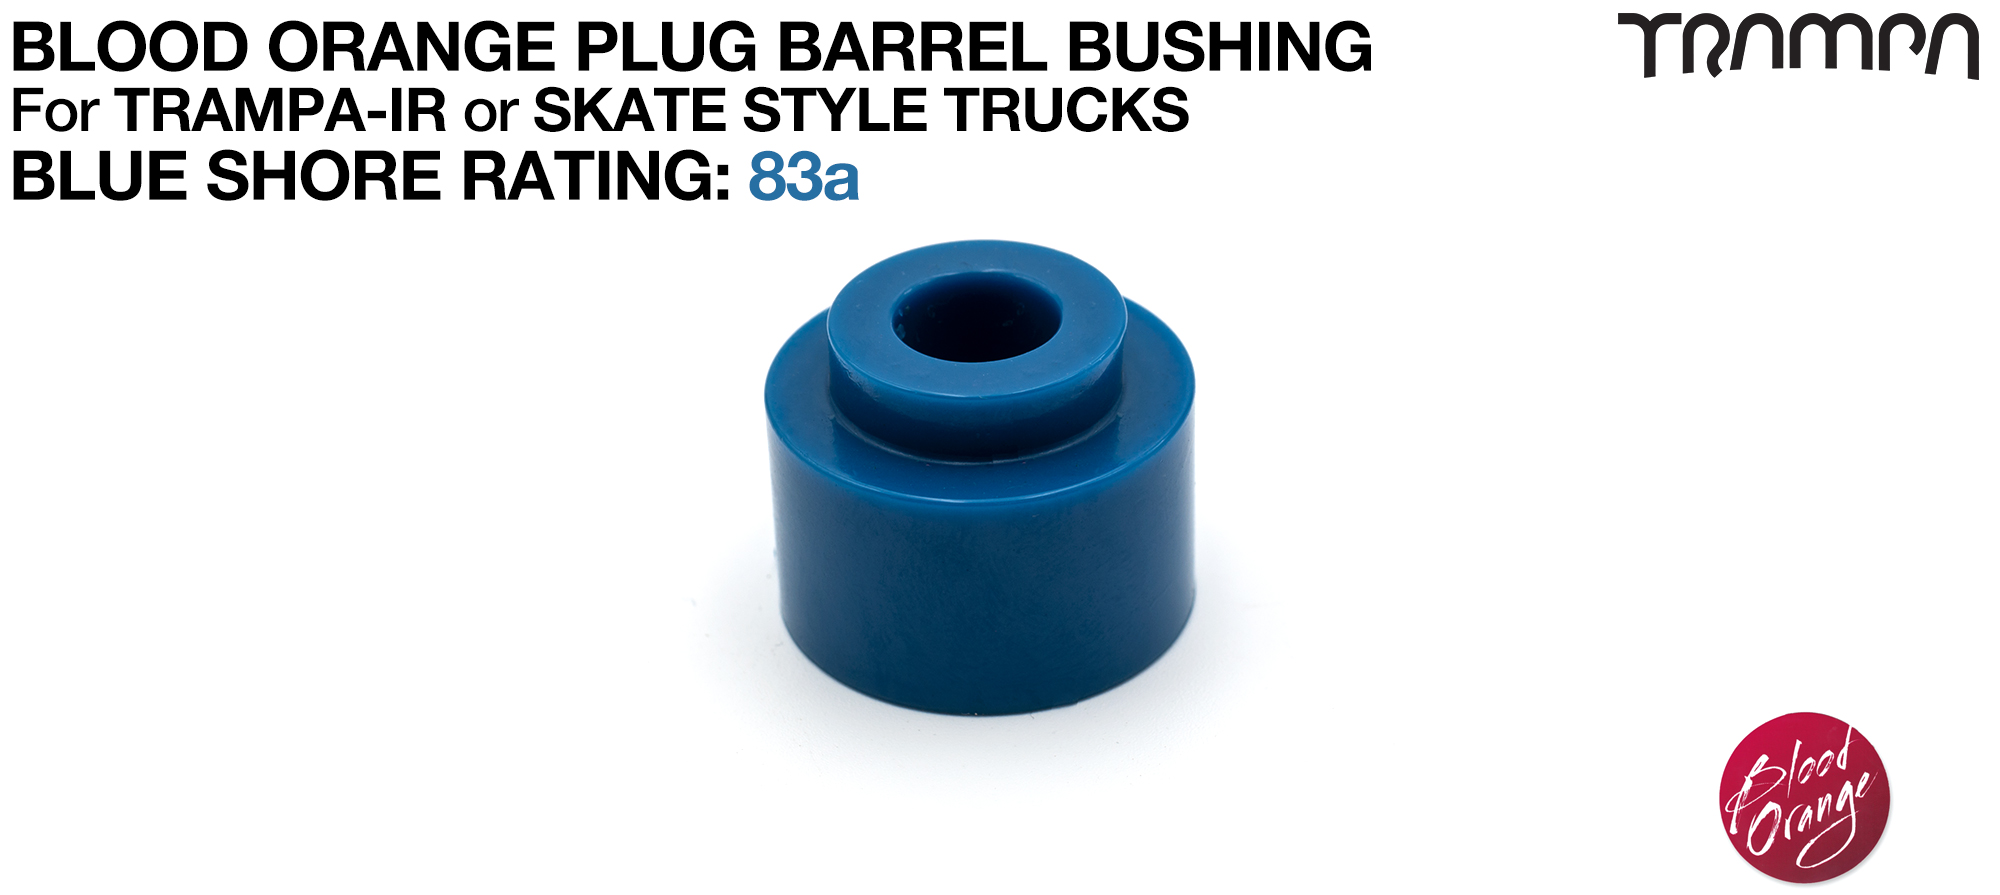 PLUG BARREL Bushings DARK BLUE - 89a 